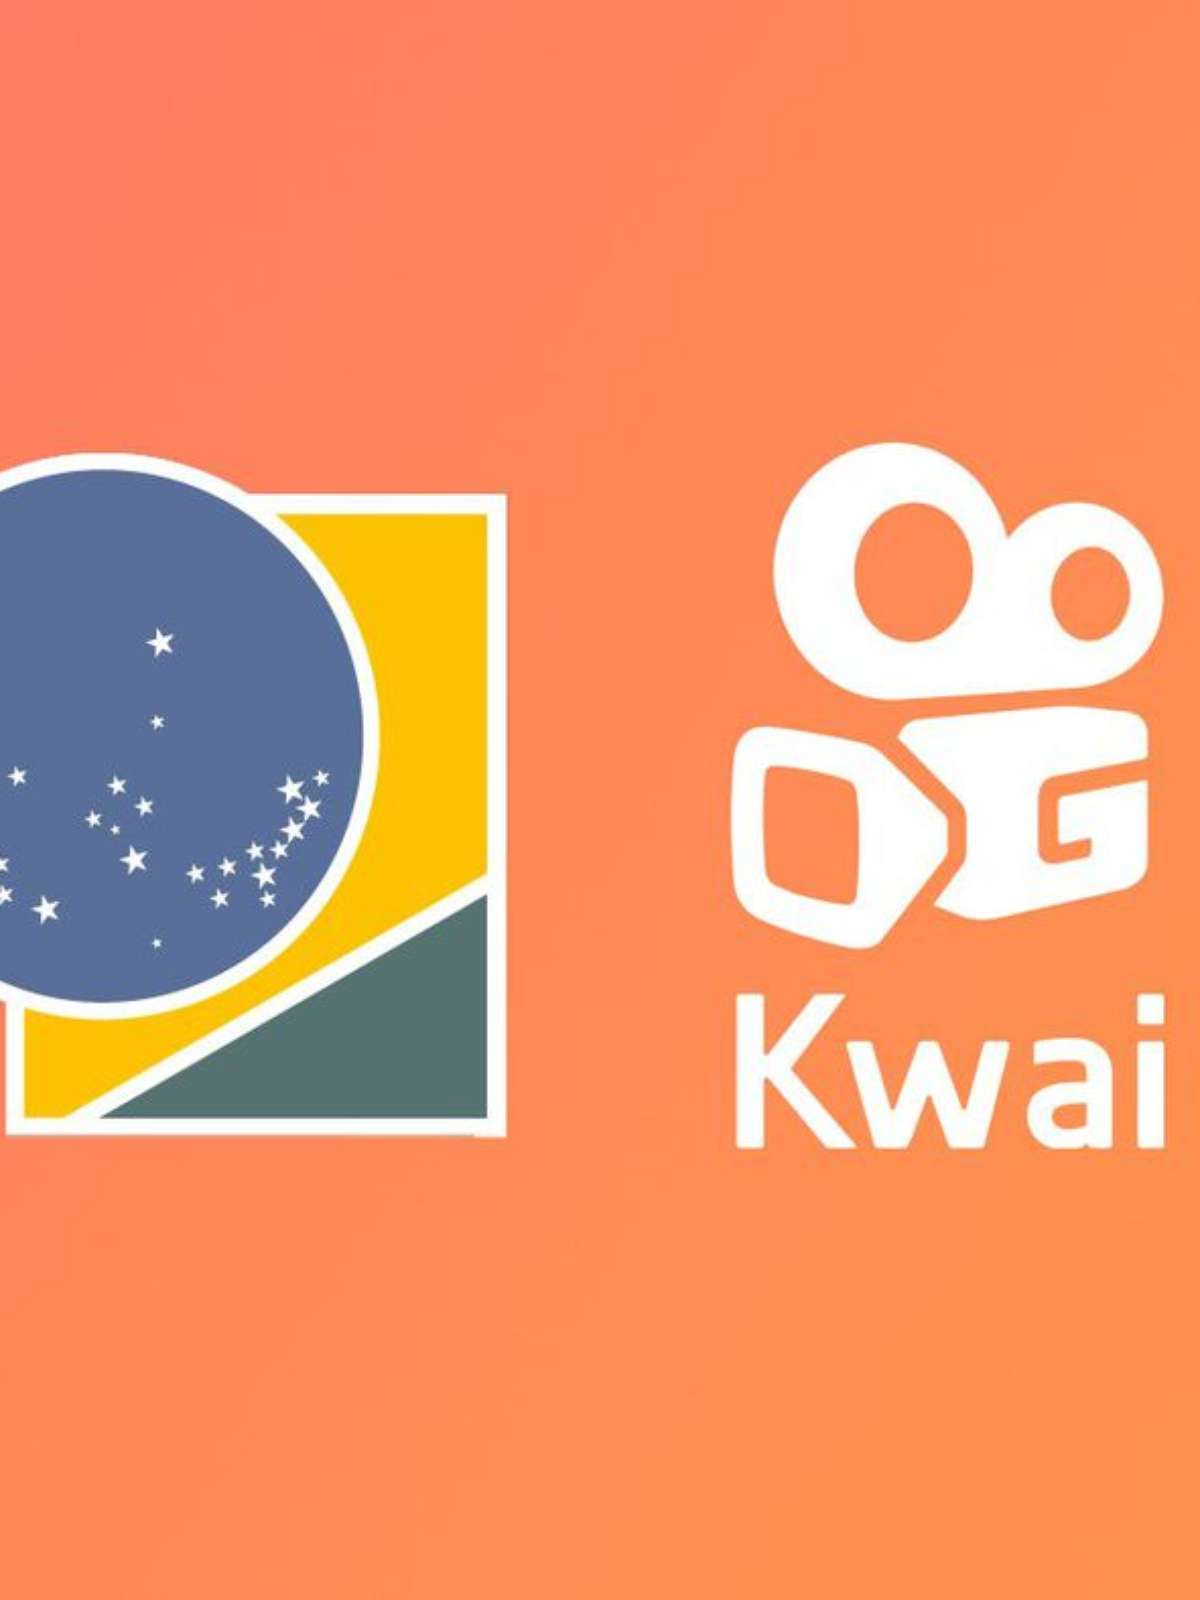 Descubra tudo sobreo Kwai, a mídia social do momento